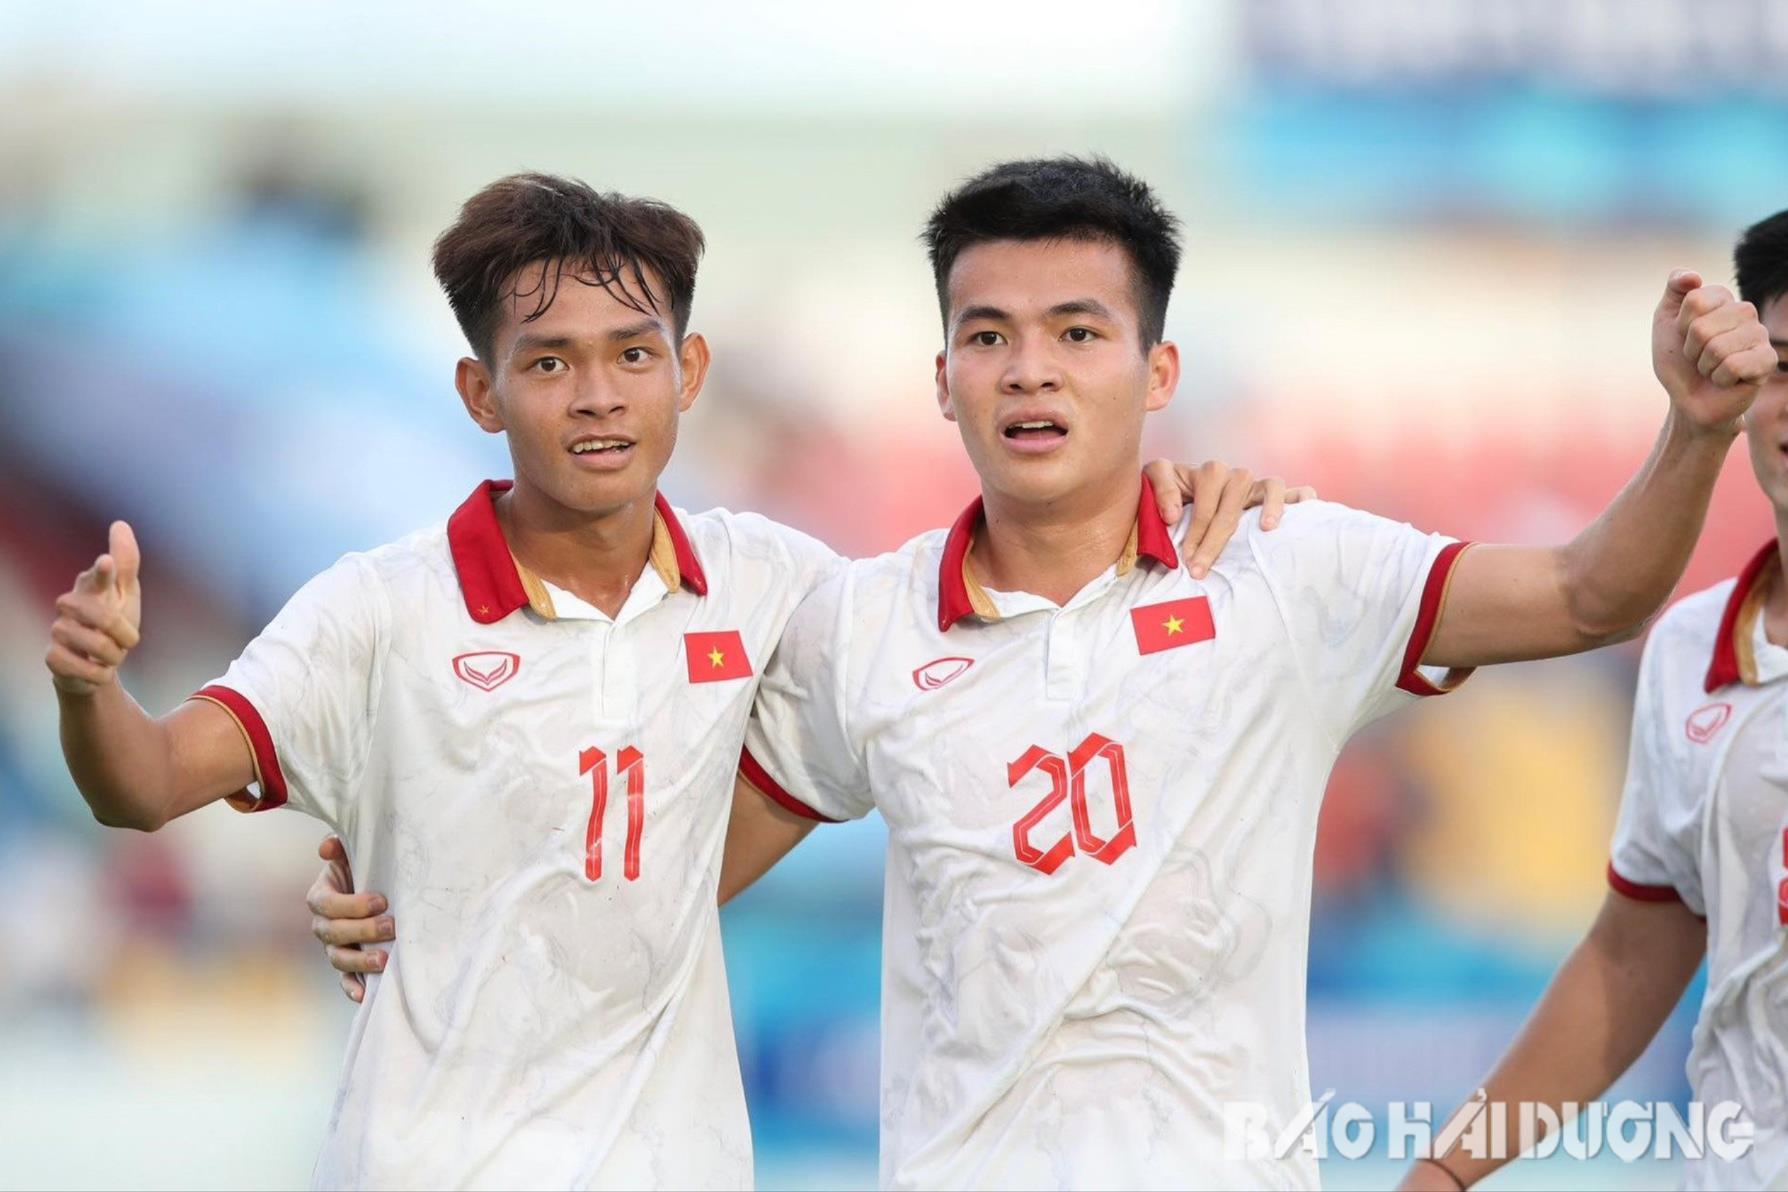 Hồng Phúc (20) - cầu thủ quê Nam Sách (Hải Dương) đang thi đấu cho U23 Việt Nam. Trong ảnh: Hồng Phúc thời điểm còn khoác áo đội tuyển U20 quốc gia. Ảnh: L.T